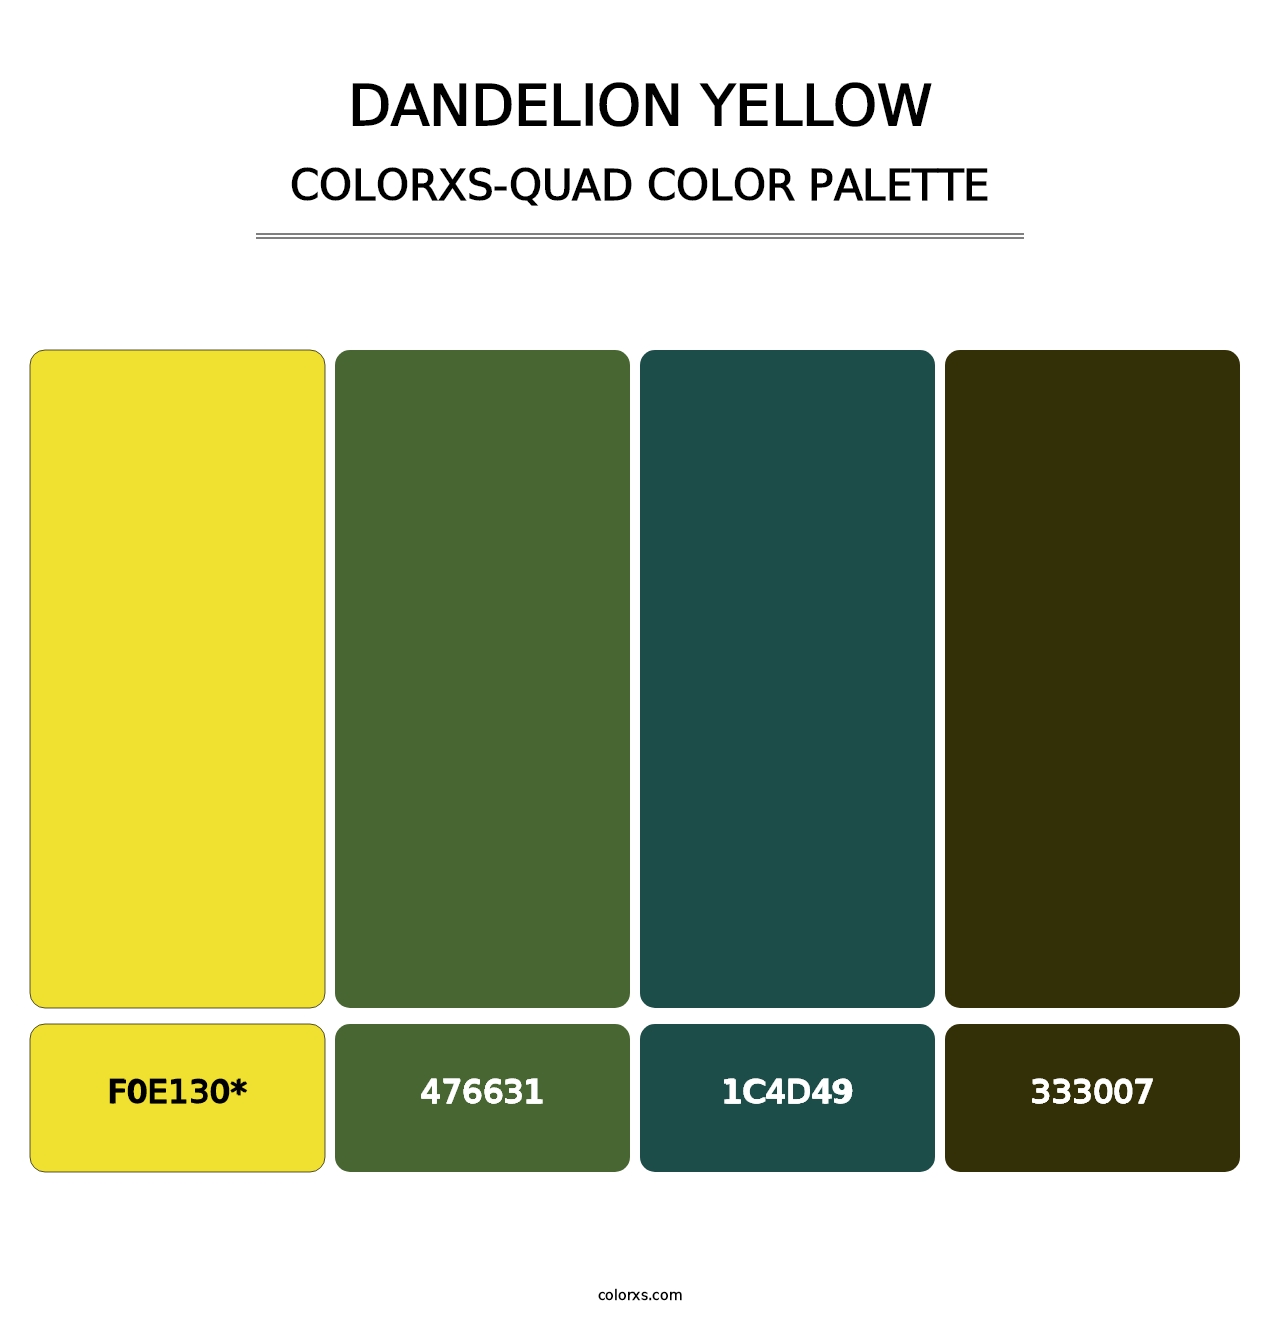 Dandelion Yellow - Colorxs Quad Palette